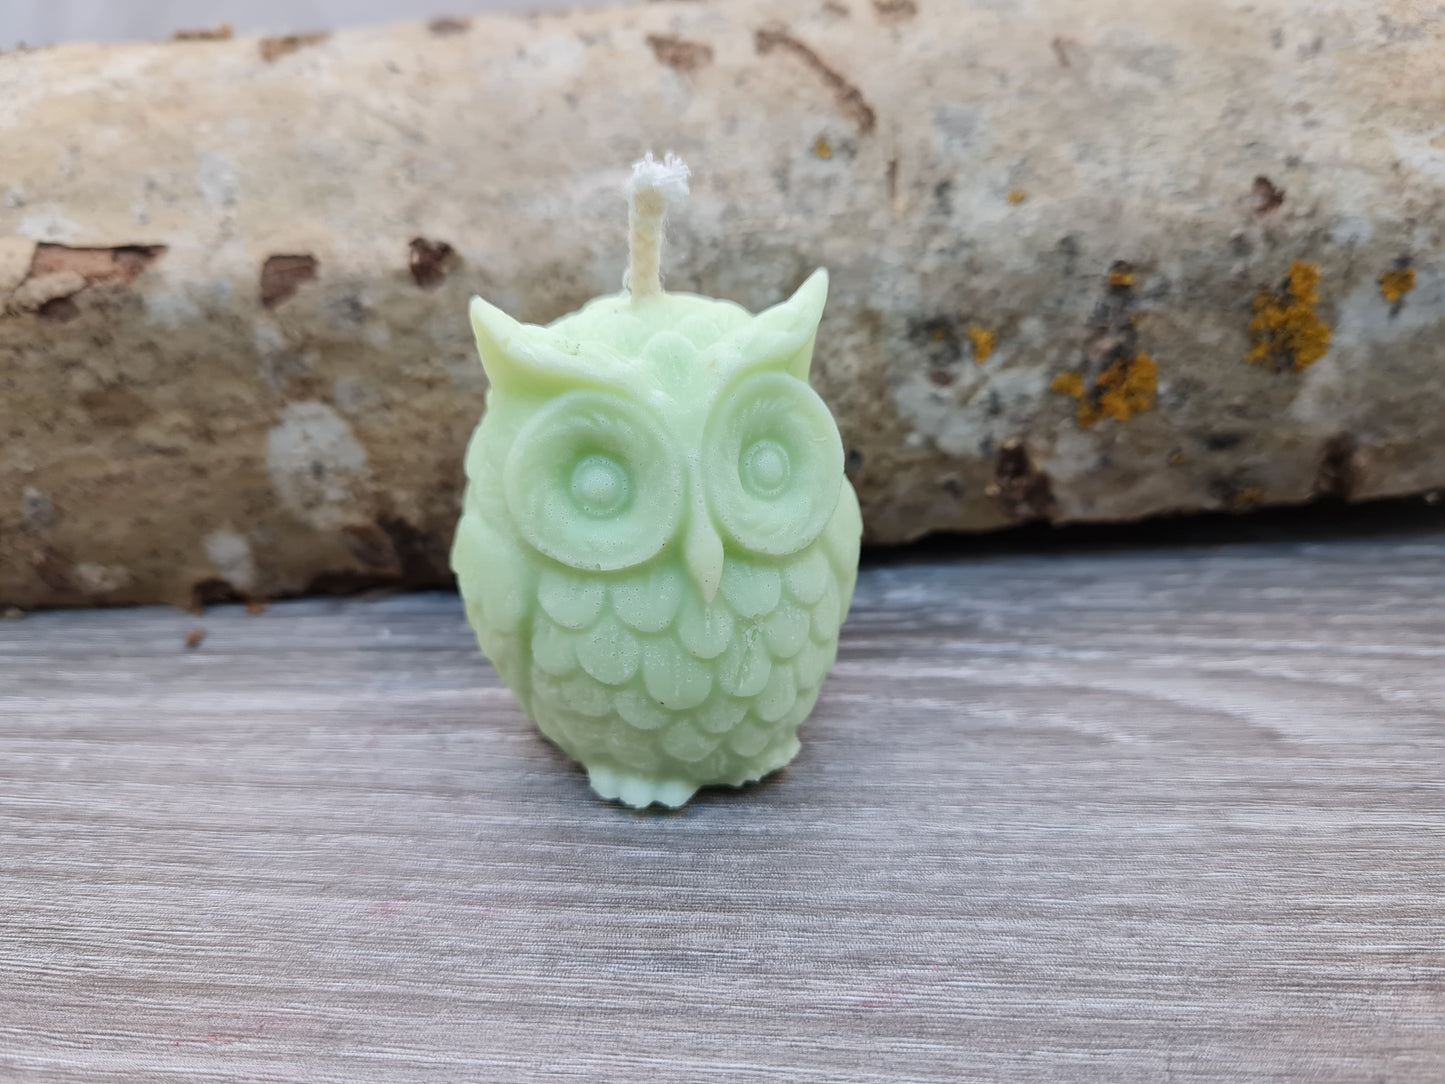 Owl candle